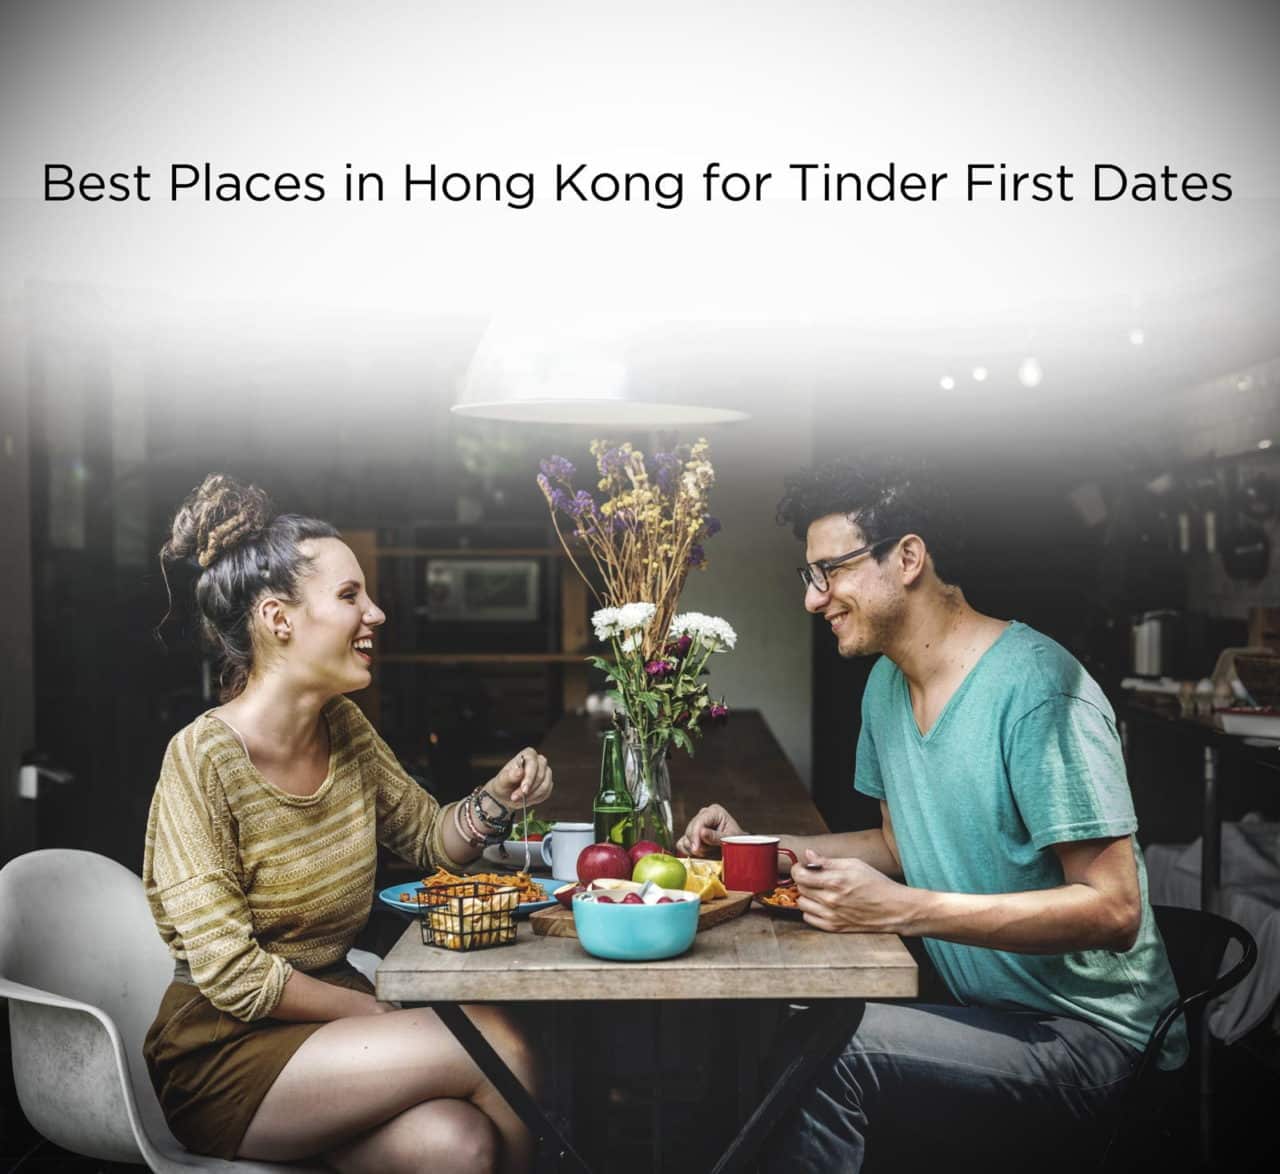 First tinder date ideas